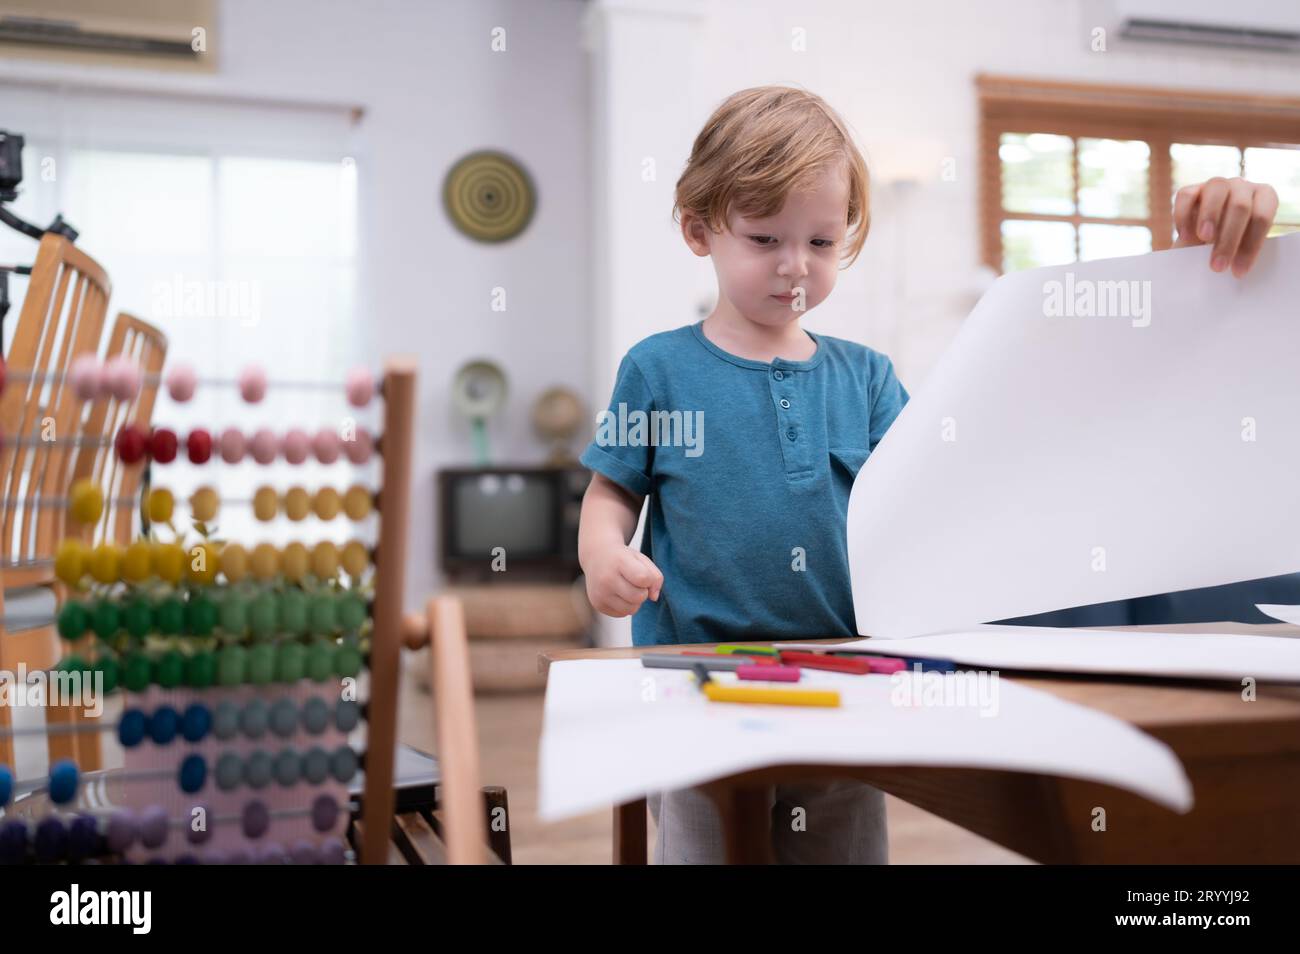 Die Vorstellungskraft eines kleinen Kindes wird durch farbige Bleistiftzeichnungen dargestellt, wobei die Mutter die Livi aufmerksam überwacht Stockfoto